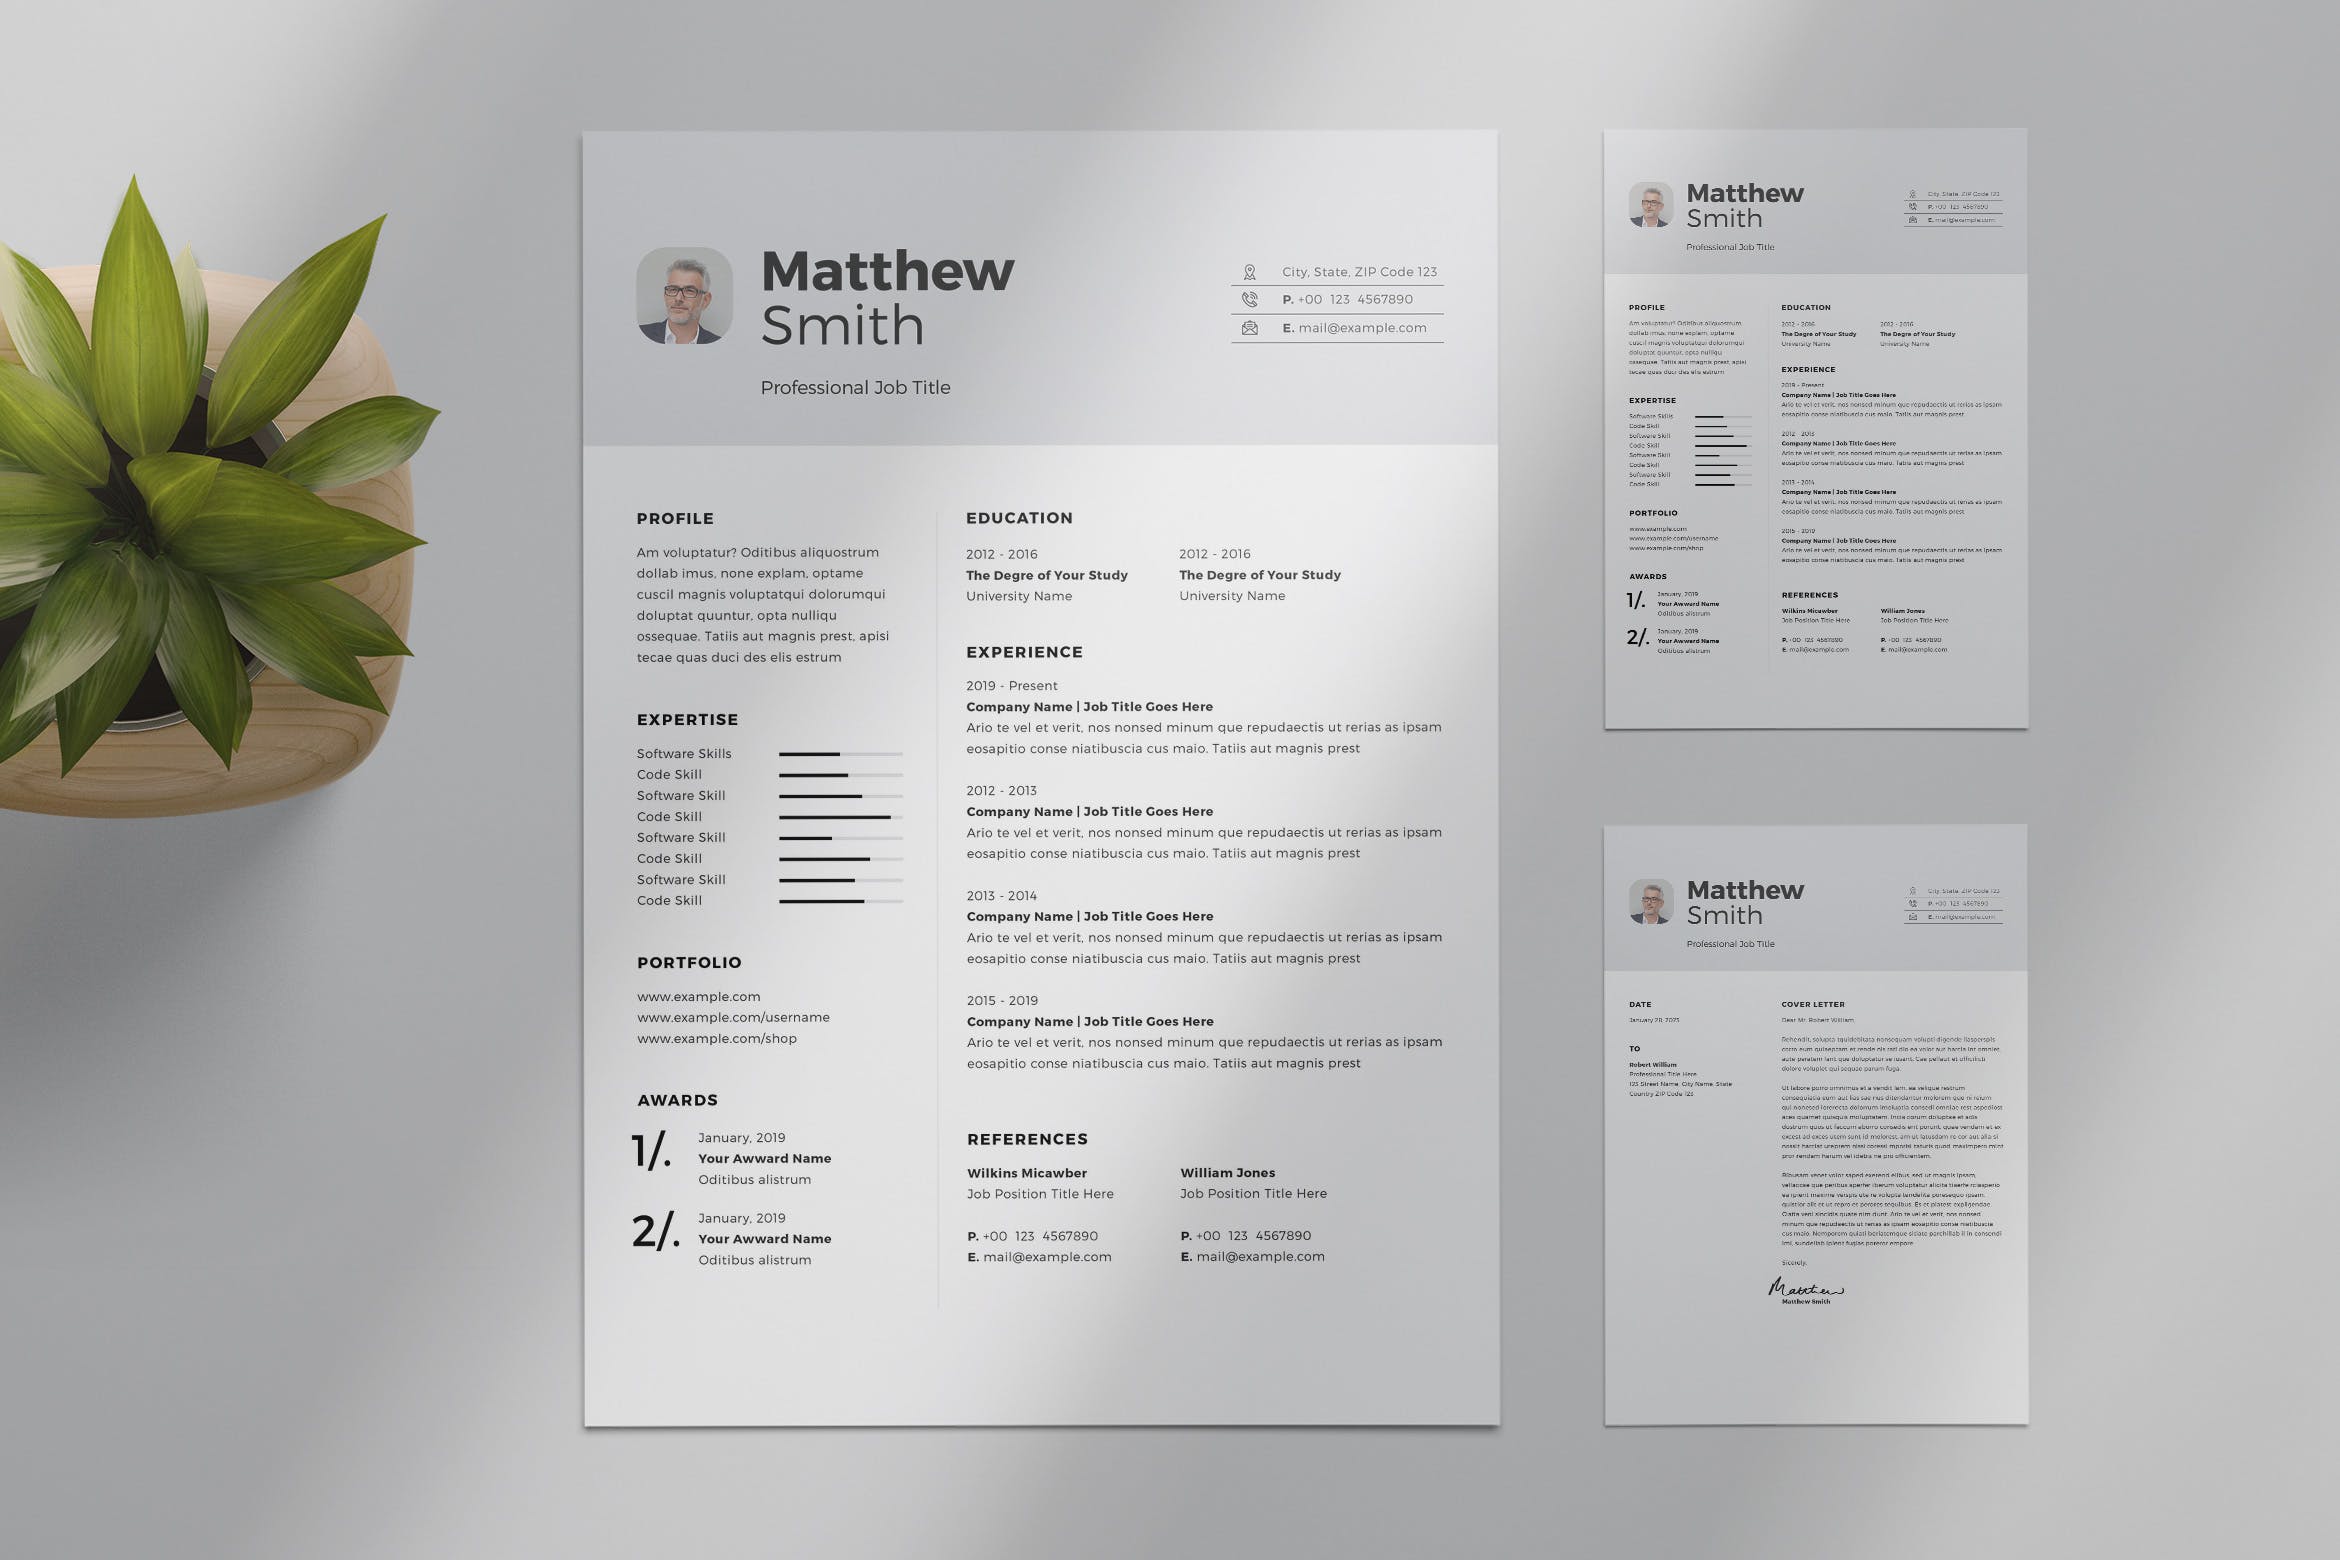 低调简约风格个人介绍信&蚂蚁素材精选简历模板 Minimalist Resume Layout插图